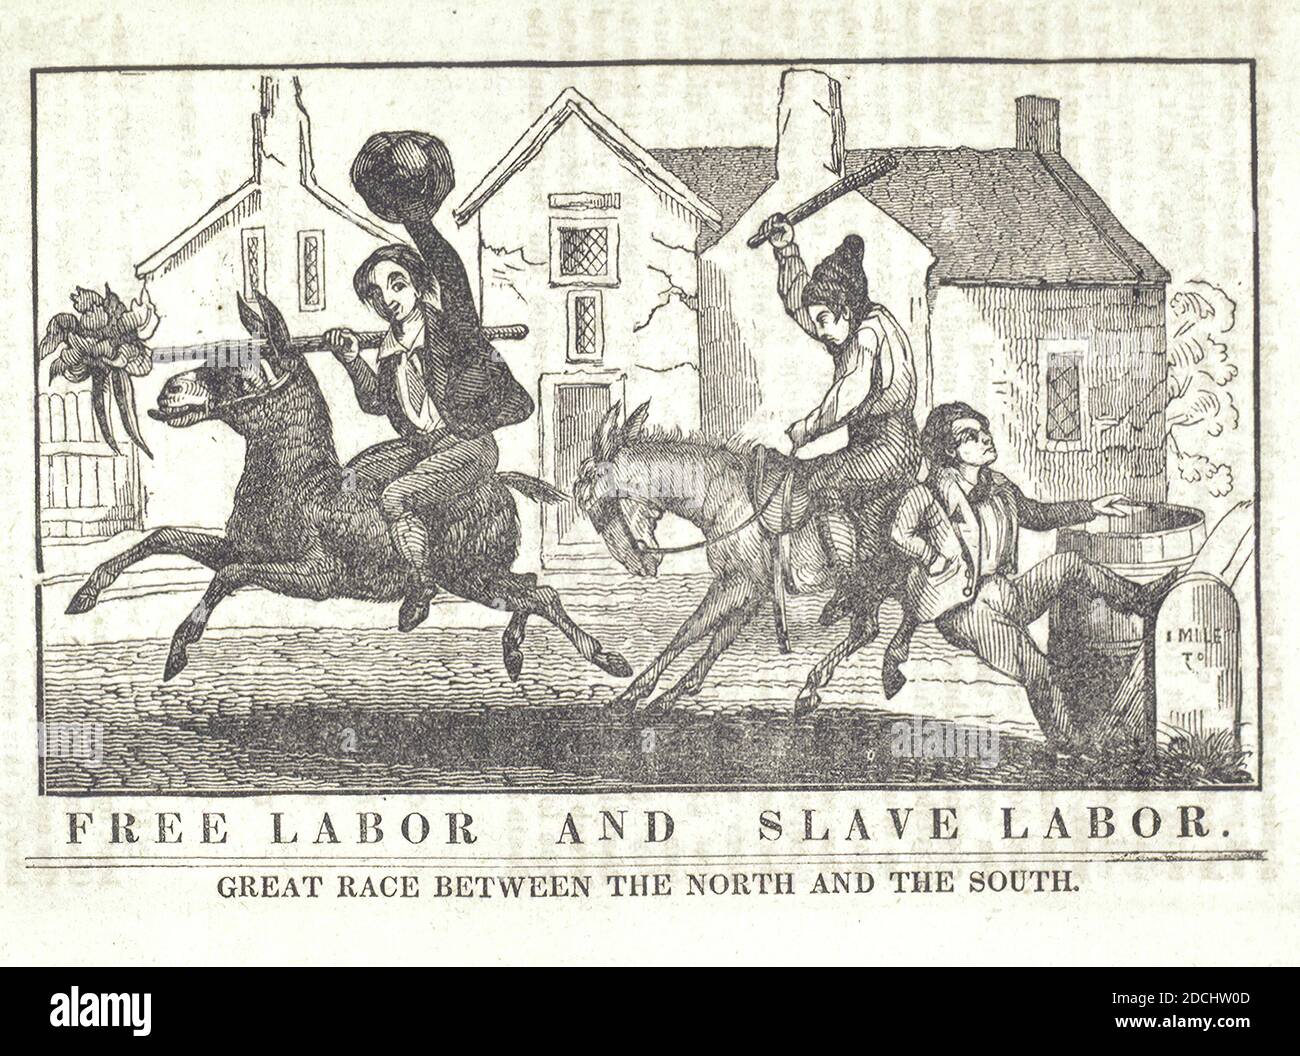 Lavoro libero e lavoro schiavo. Grande corsa tra il Nord e il Sud., immagine fissa, illustrazioni, 1836 - 1844 Foto Stock